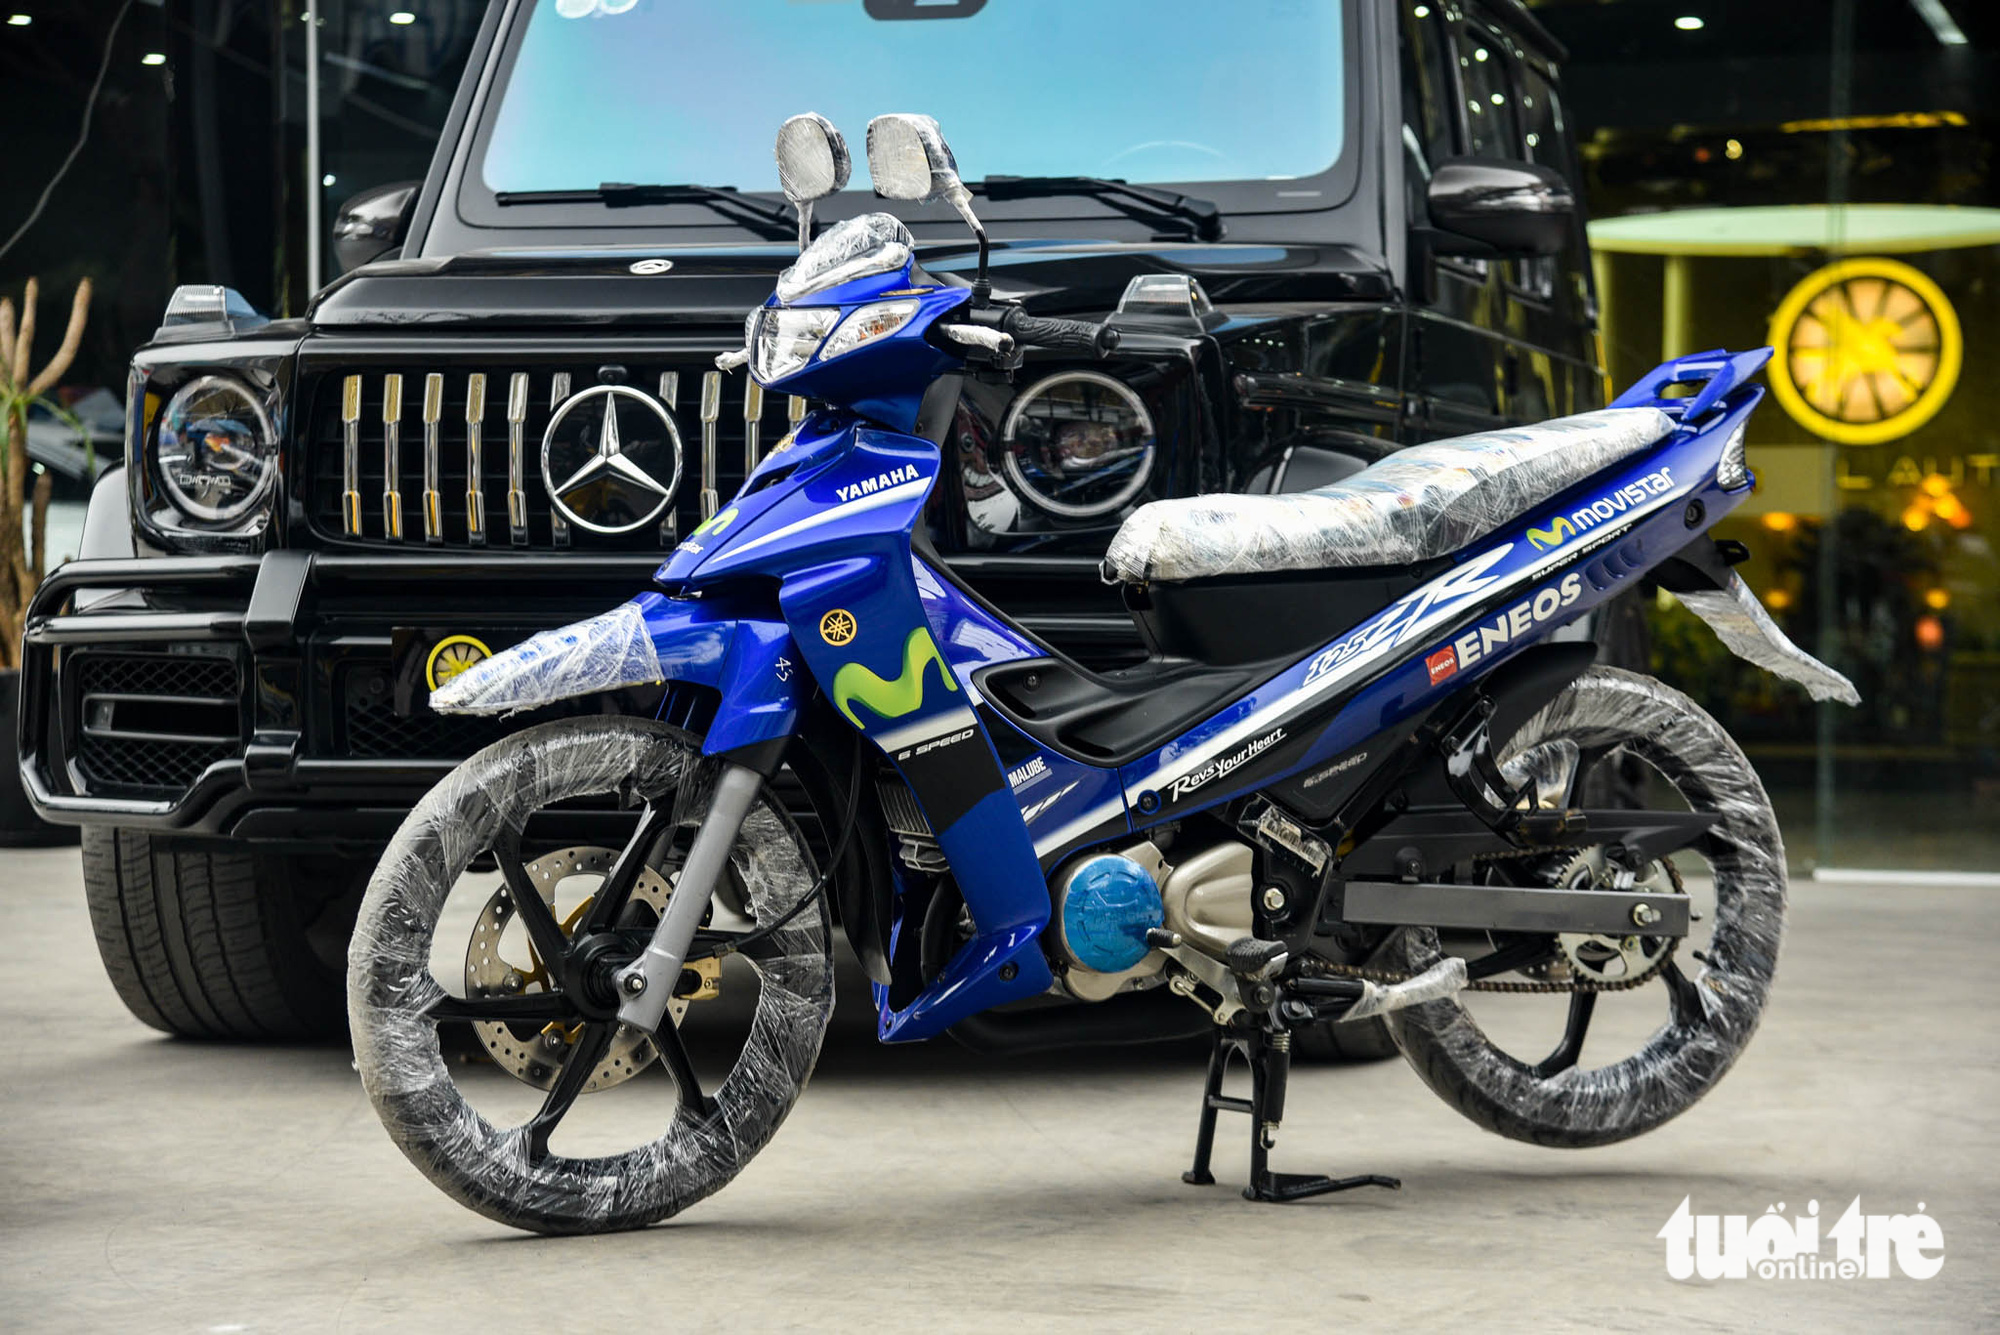 Yamaha 125ZR bản giới hạn giá khoảng 600 triệu đồng tại Hà Nội, dành cho dân chơi thích hàng độc - Ảnh 1.